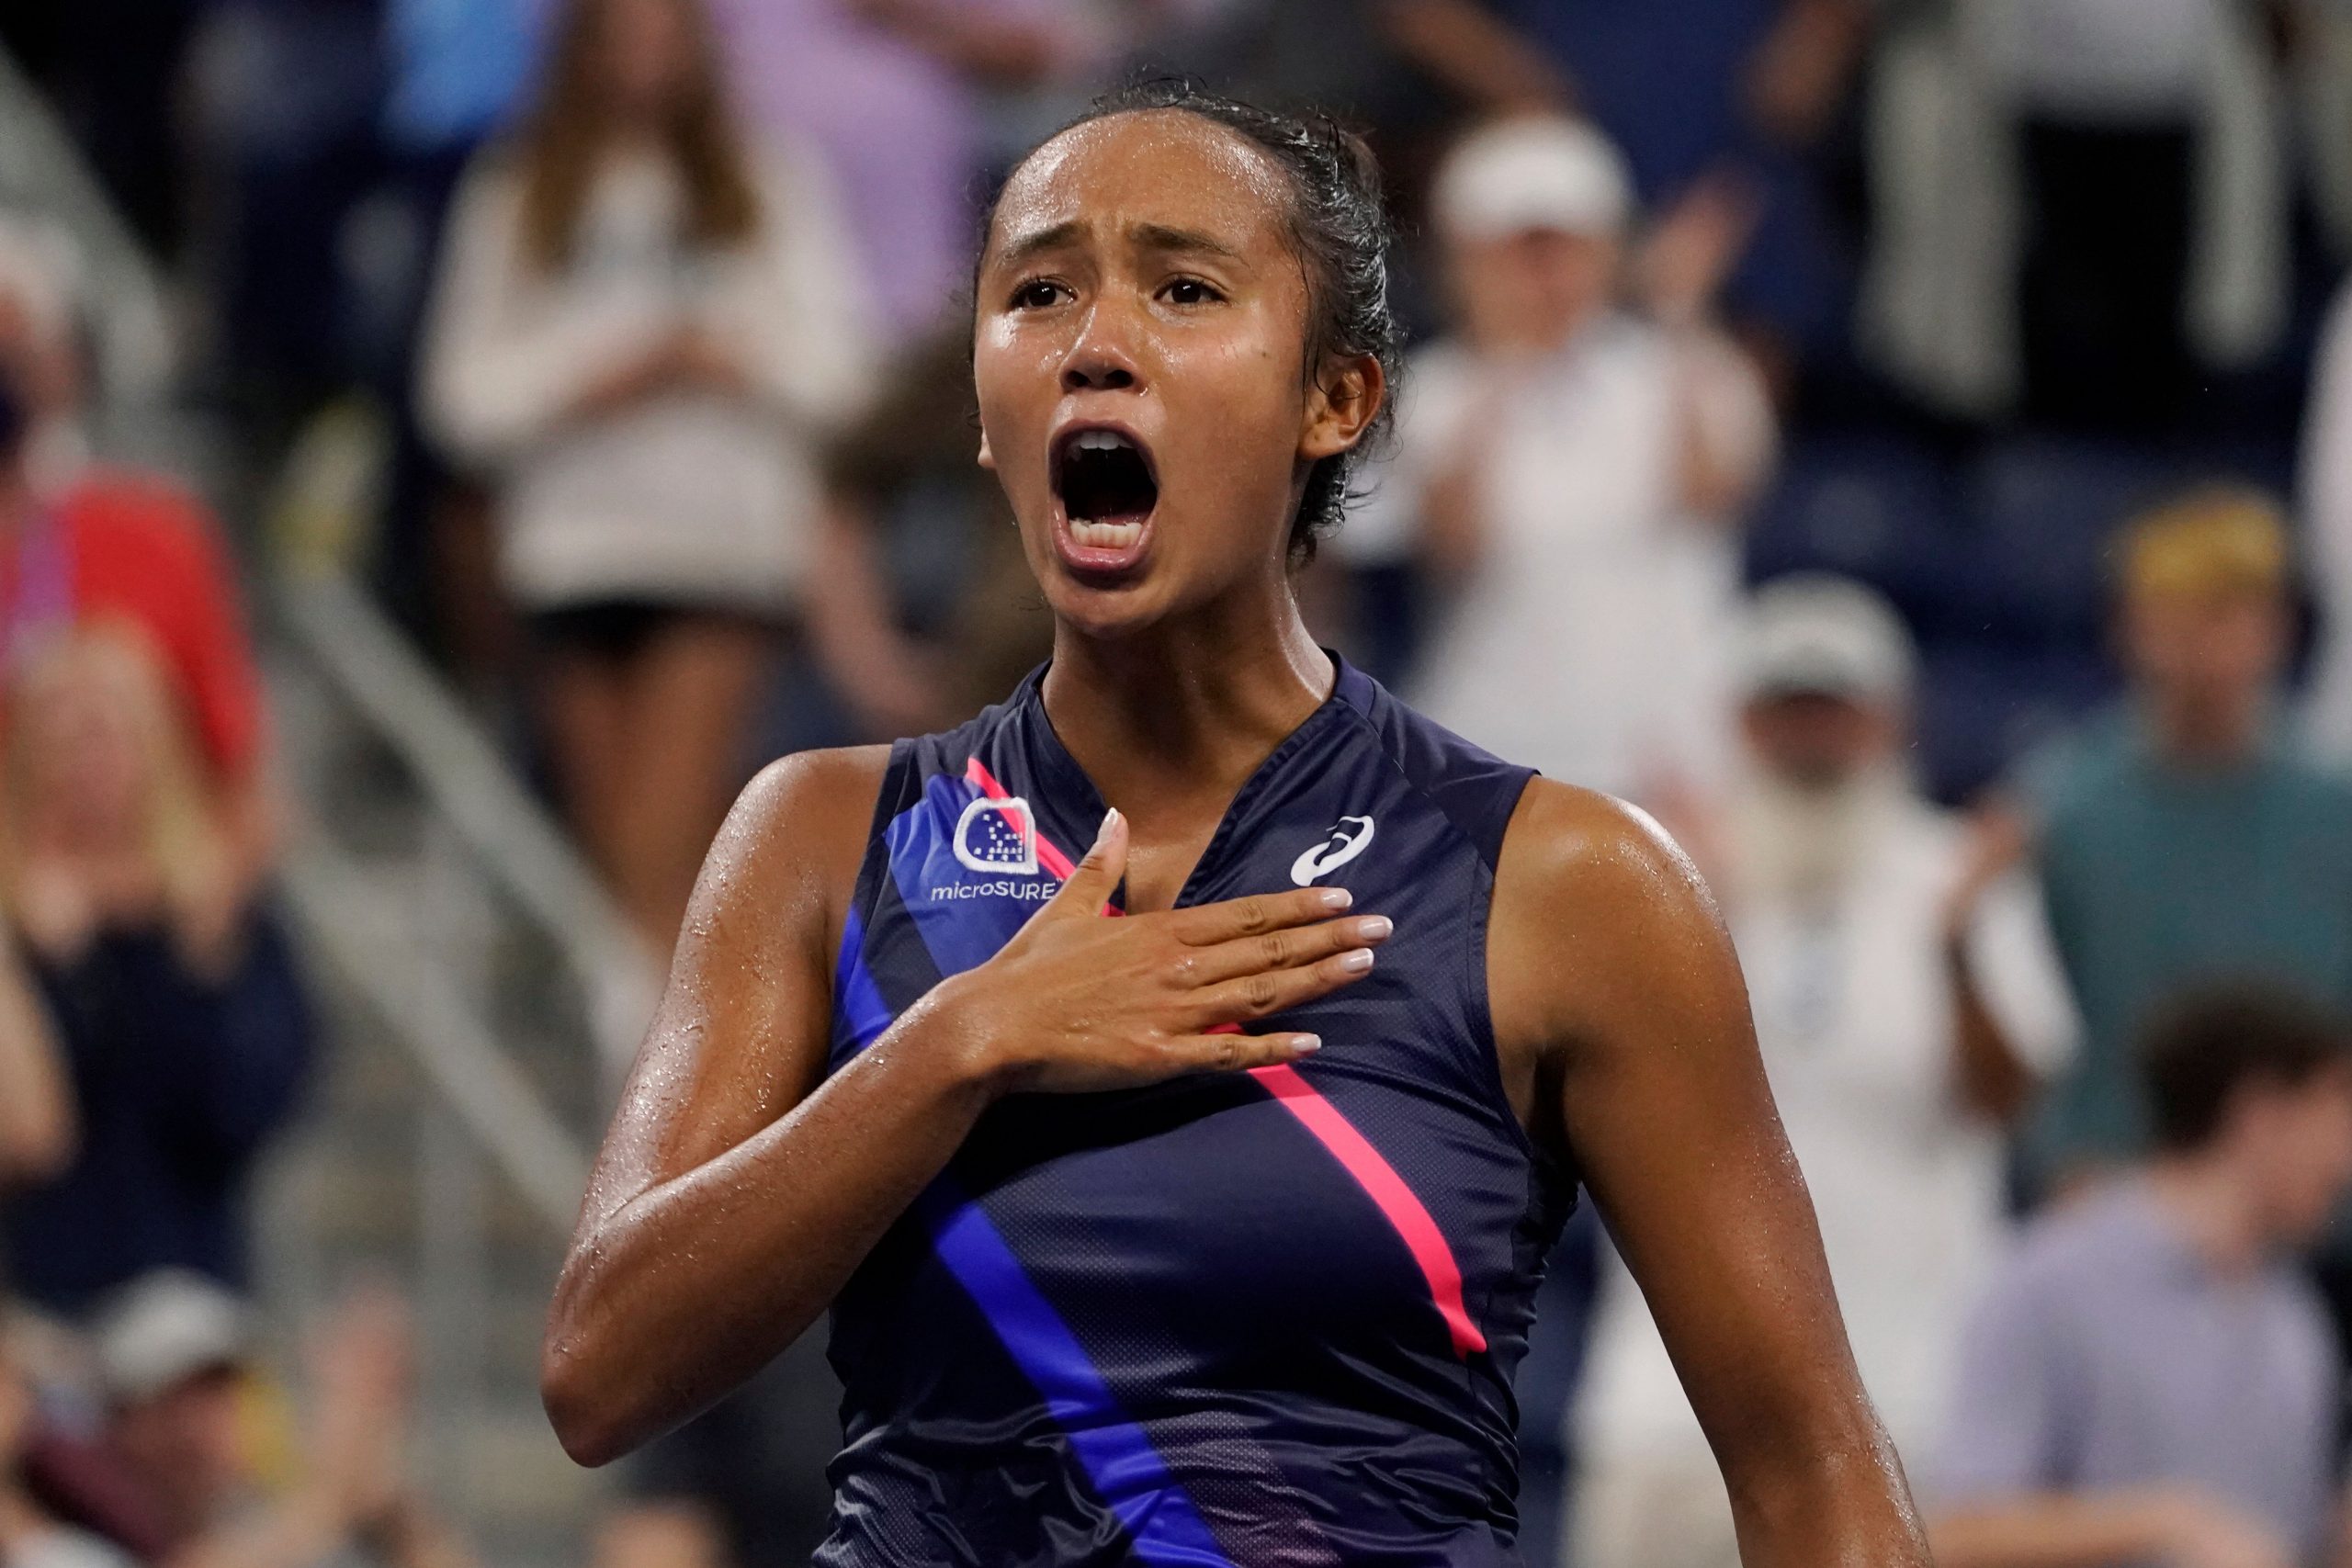 ‘Happy-go-lucky’ teen Leylah Fernandez upsets Angelique Kerber at US Open